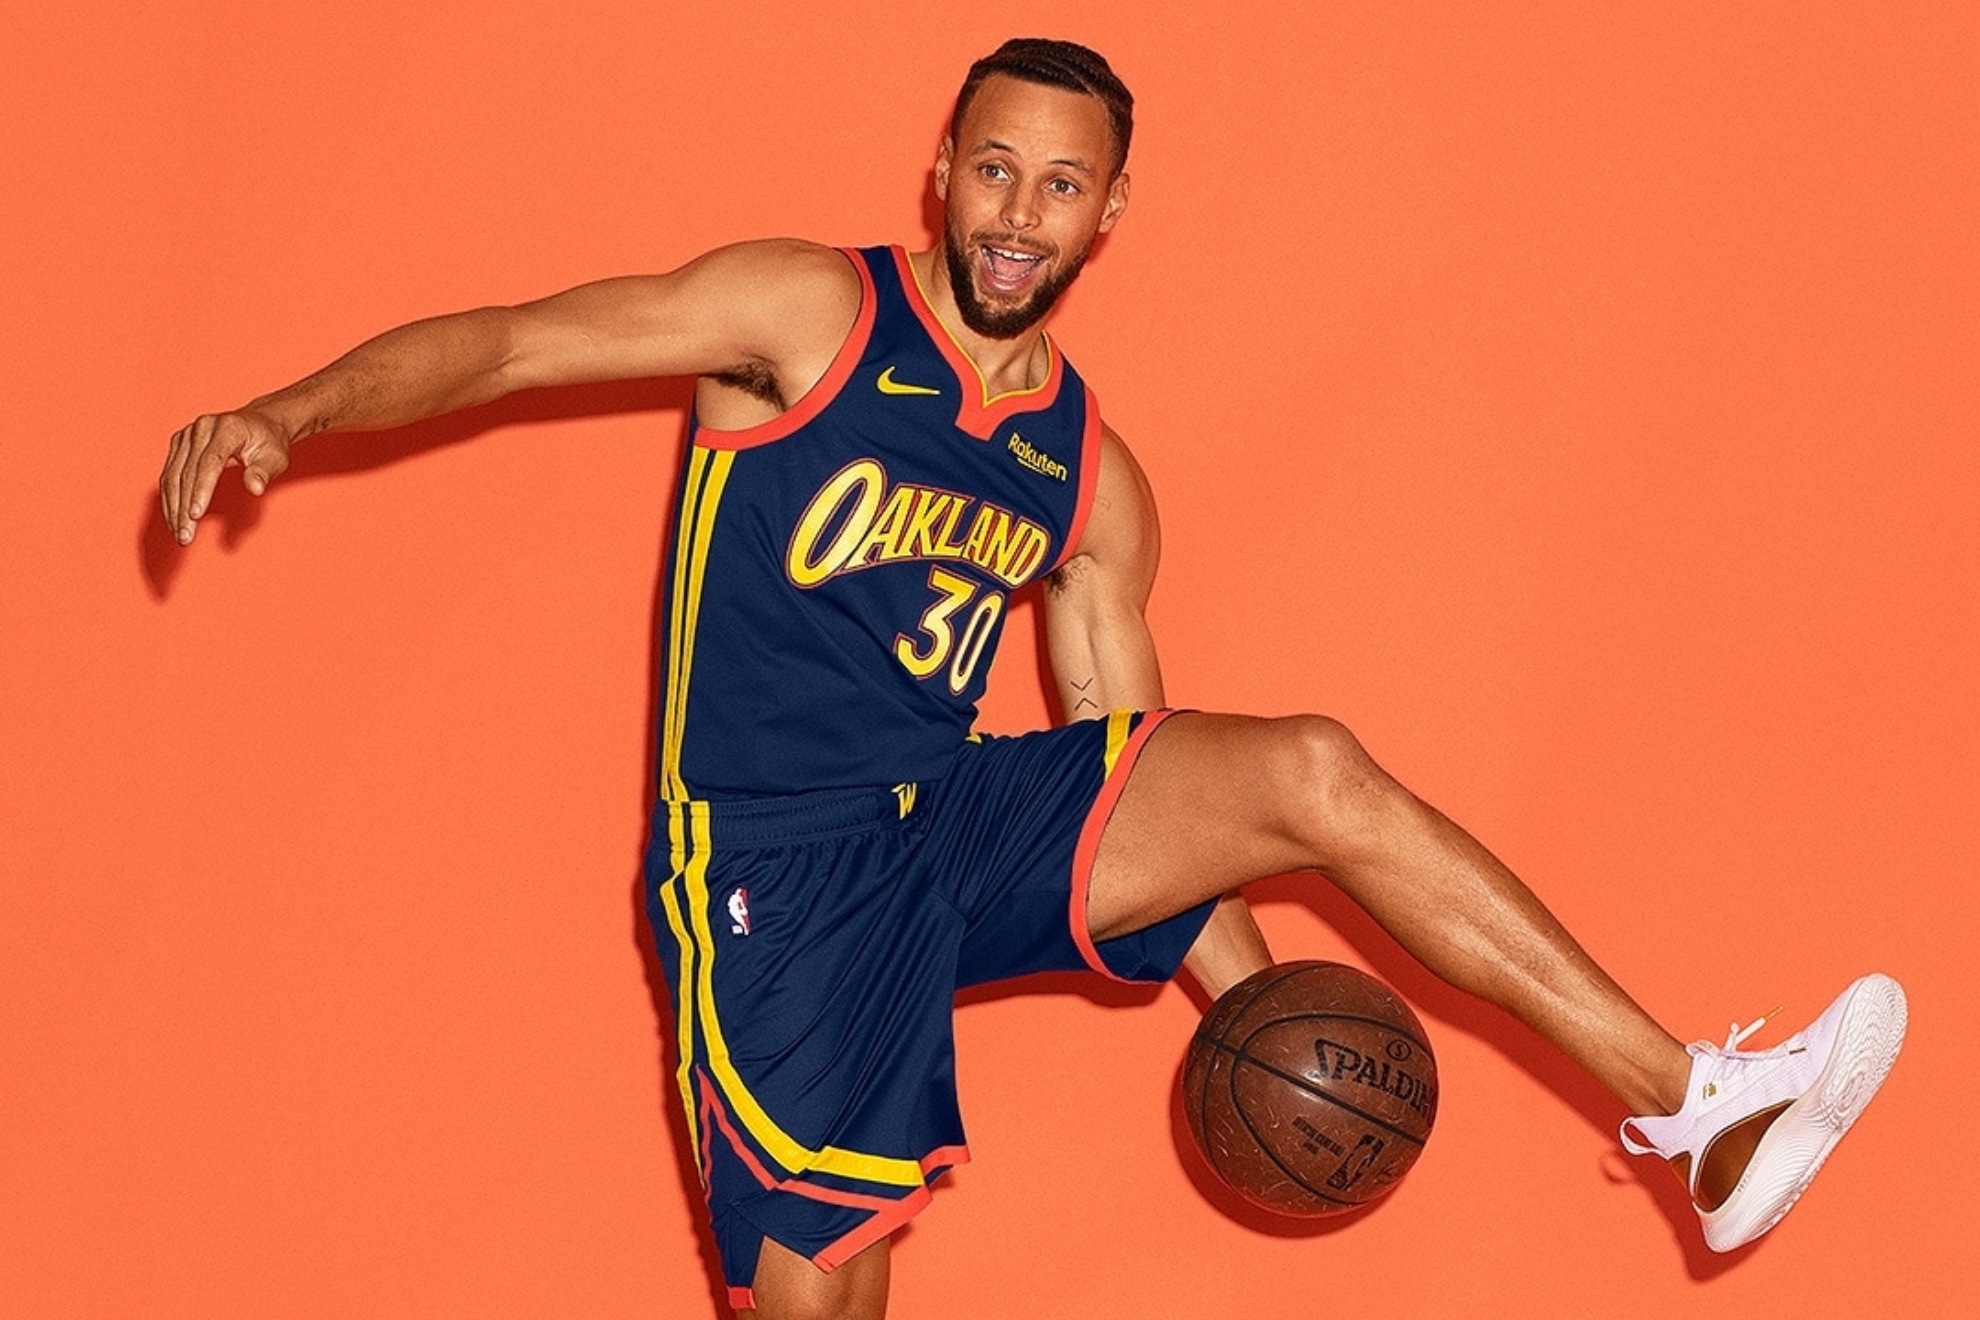 Oakland, la ciudad maldita del deporte: de la 'huida' de Curry a la de todos sus equipos